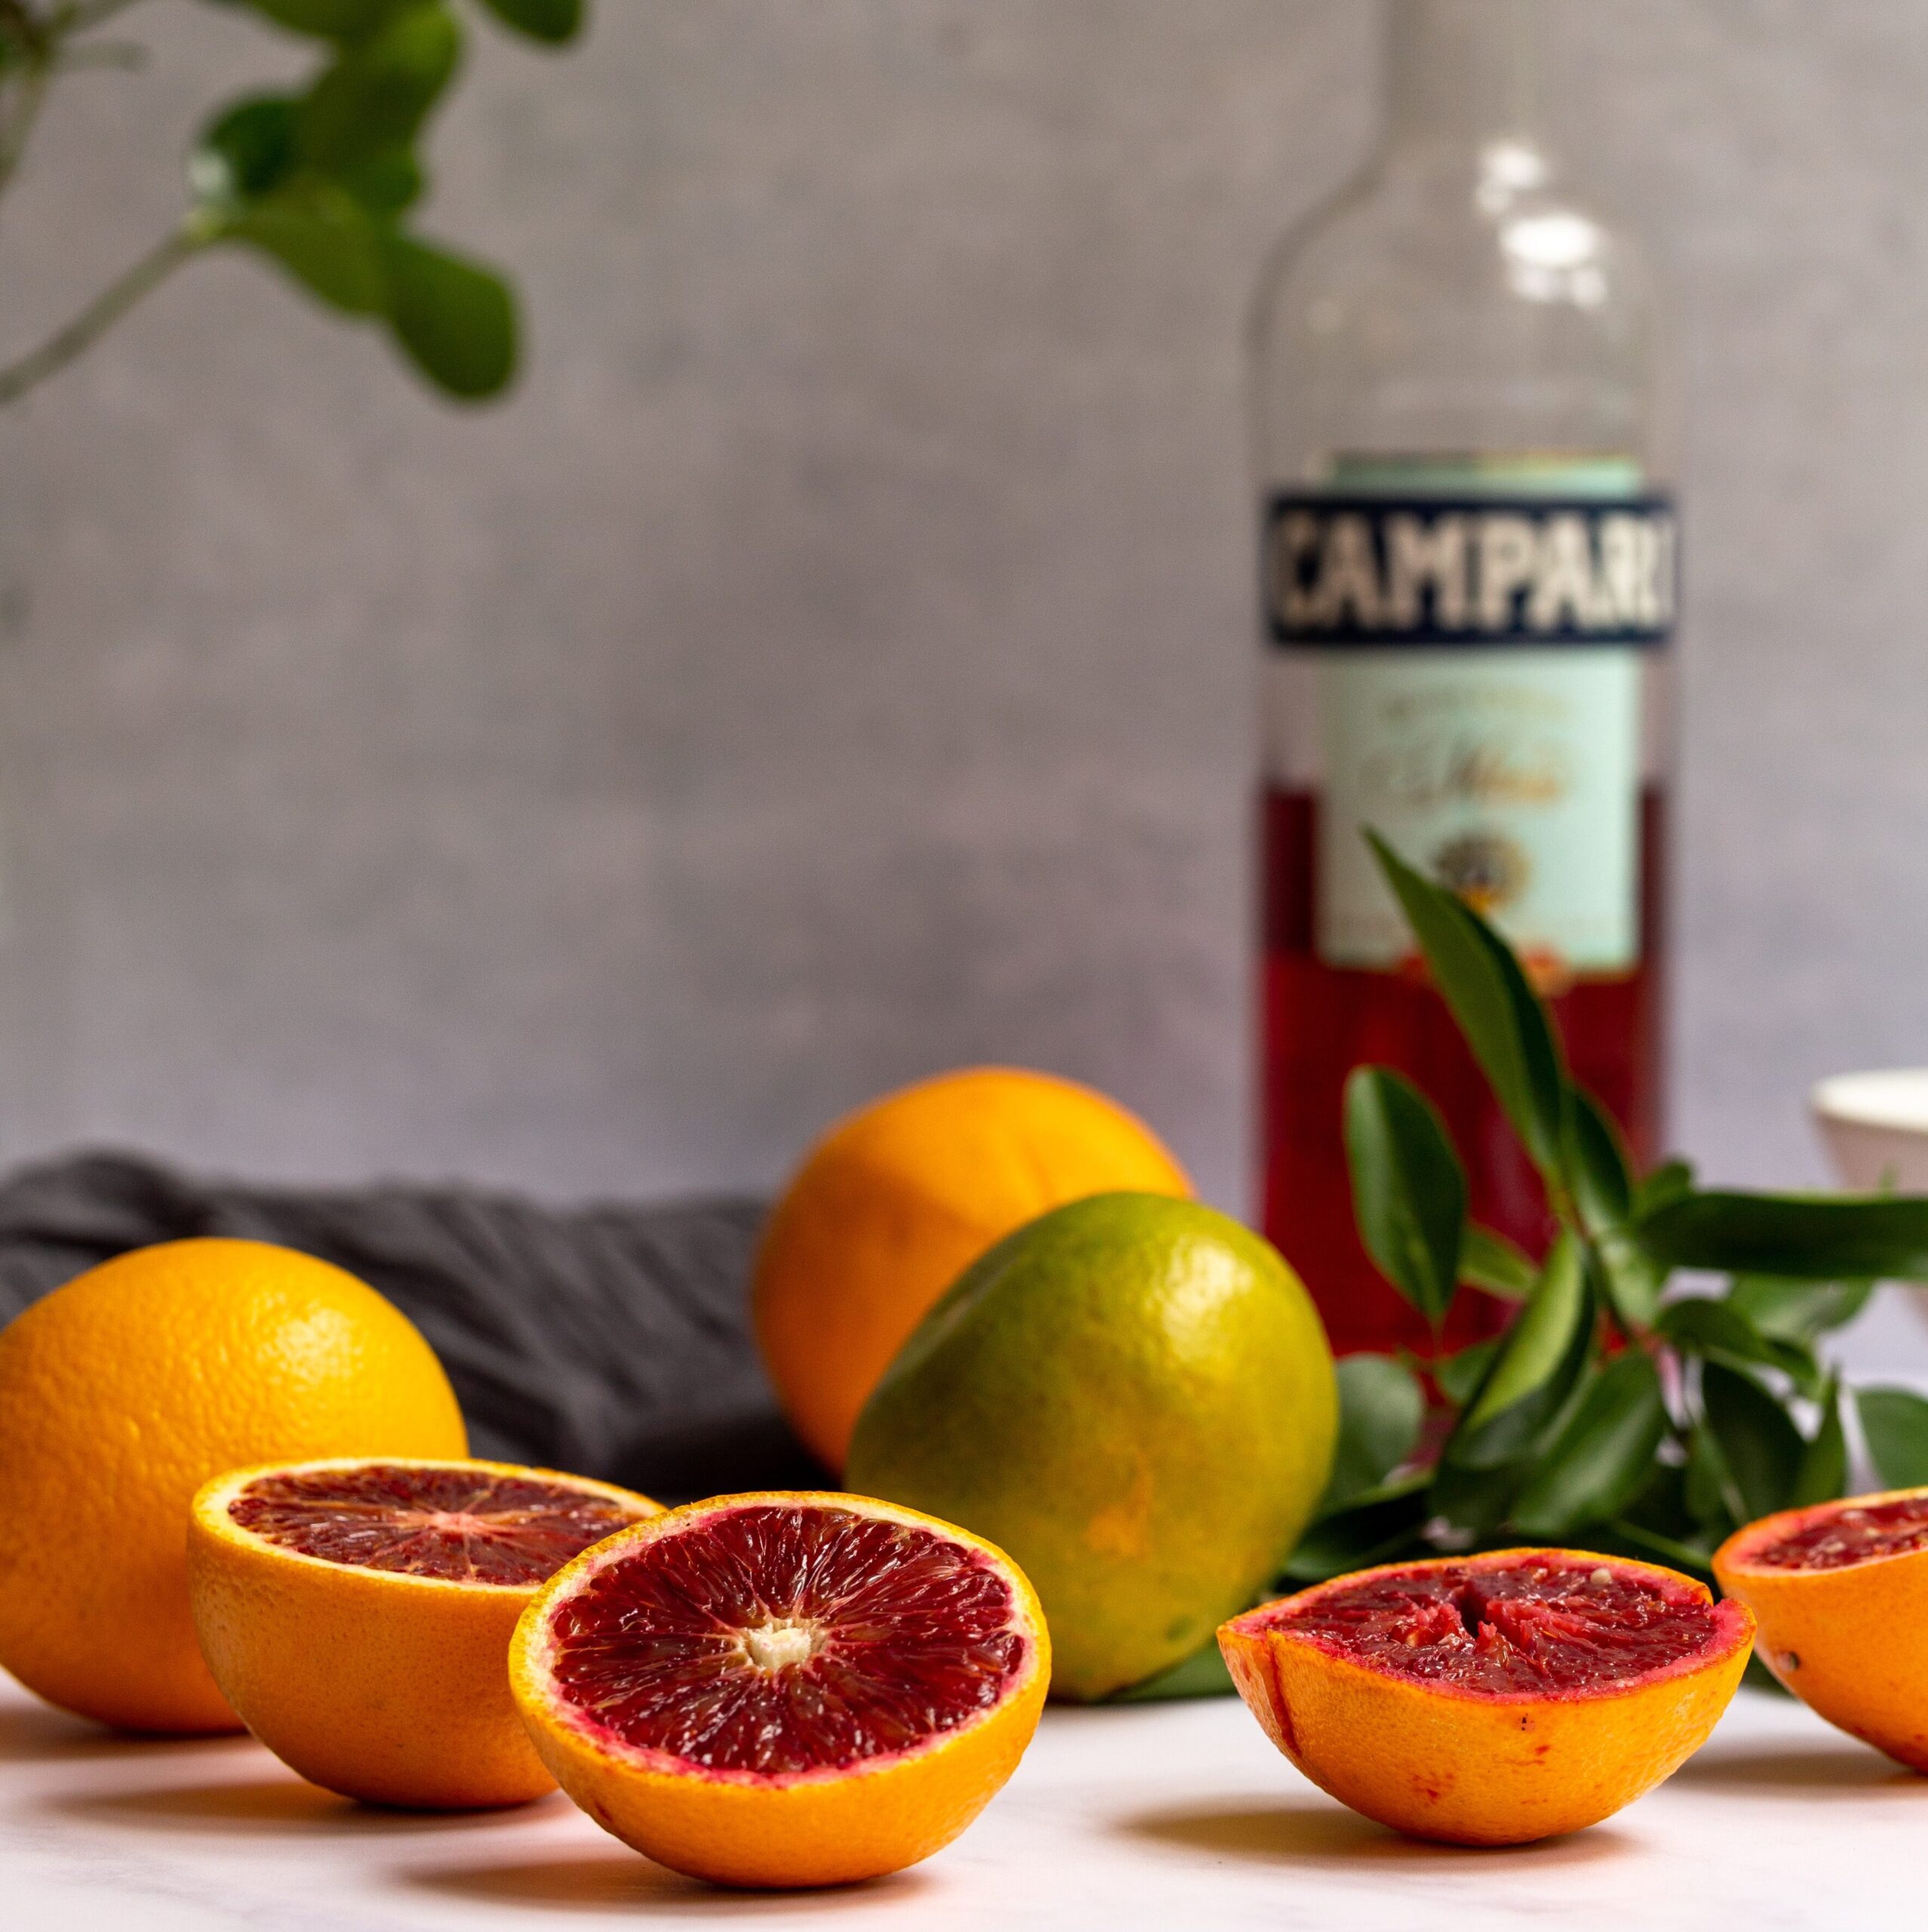 Aperol Spritz oranges